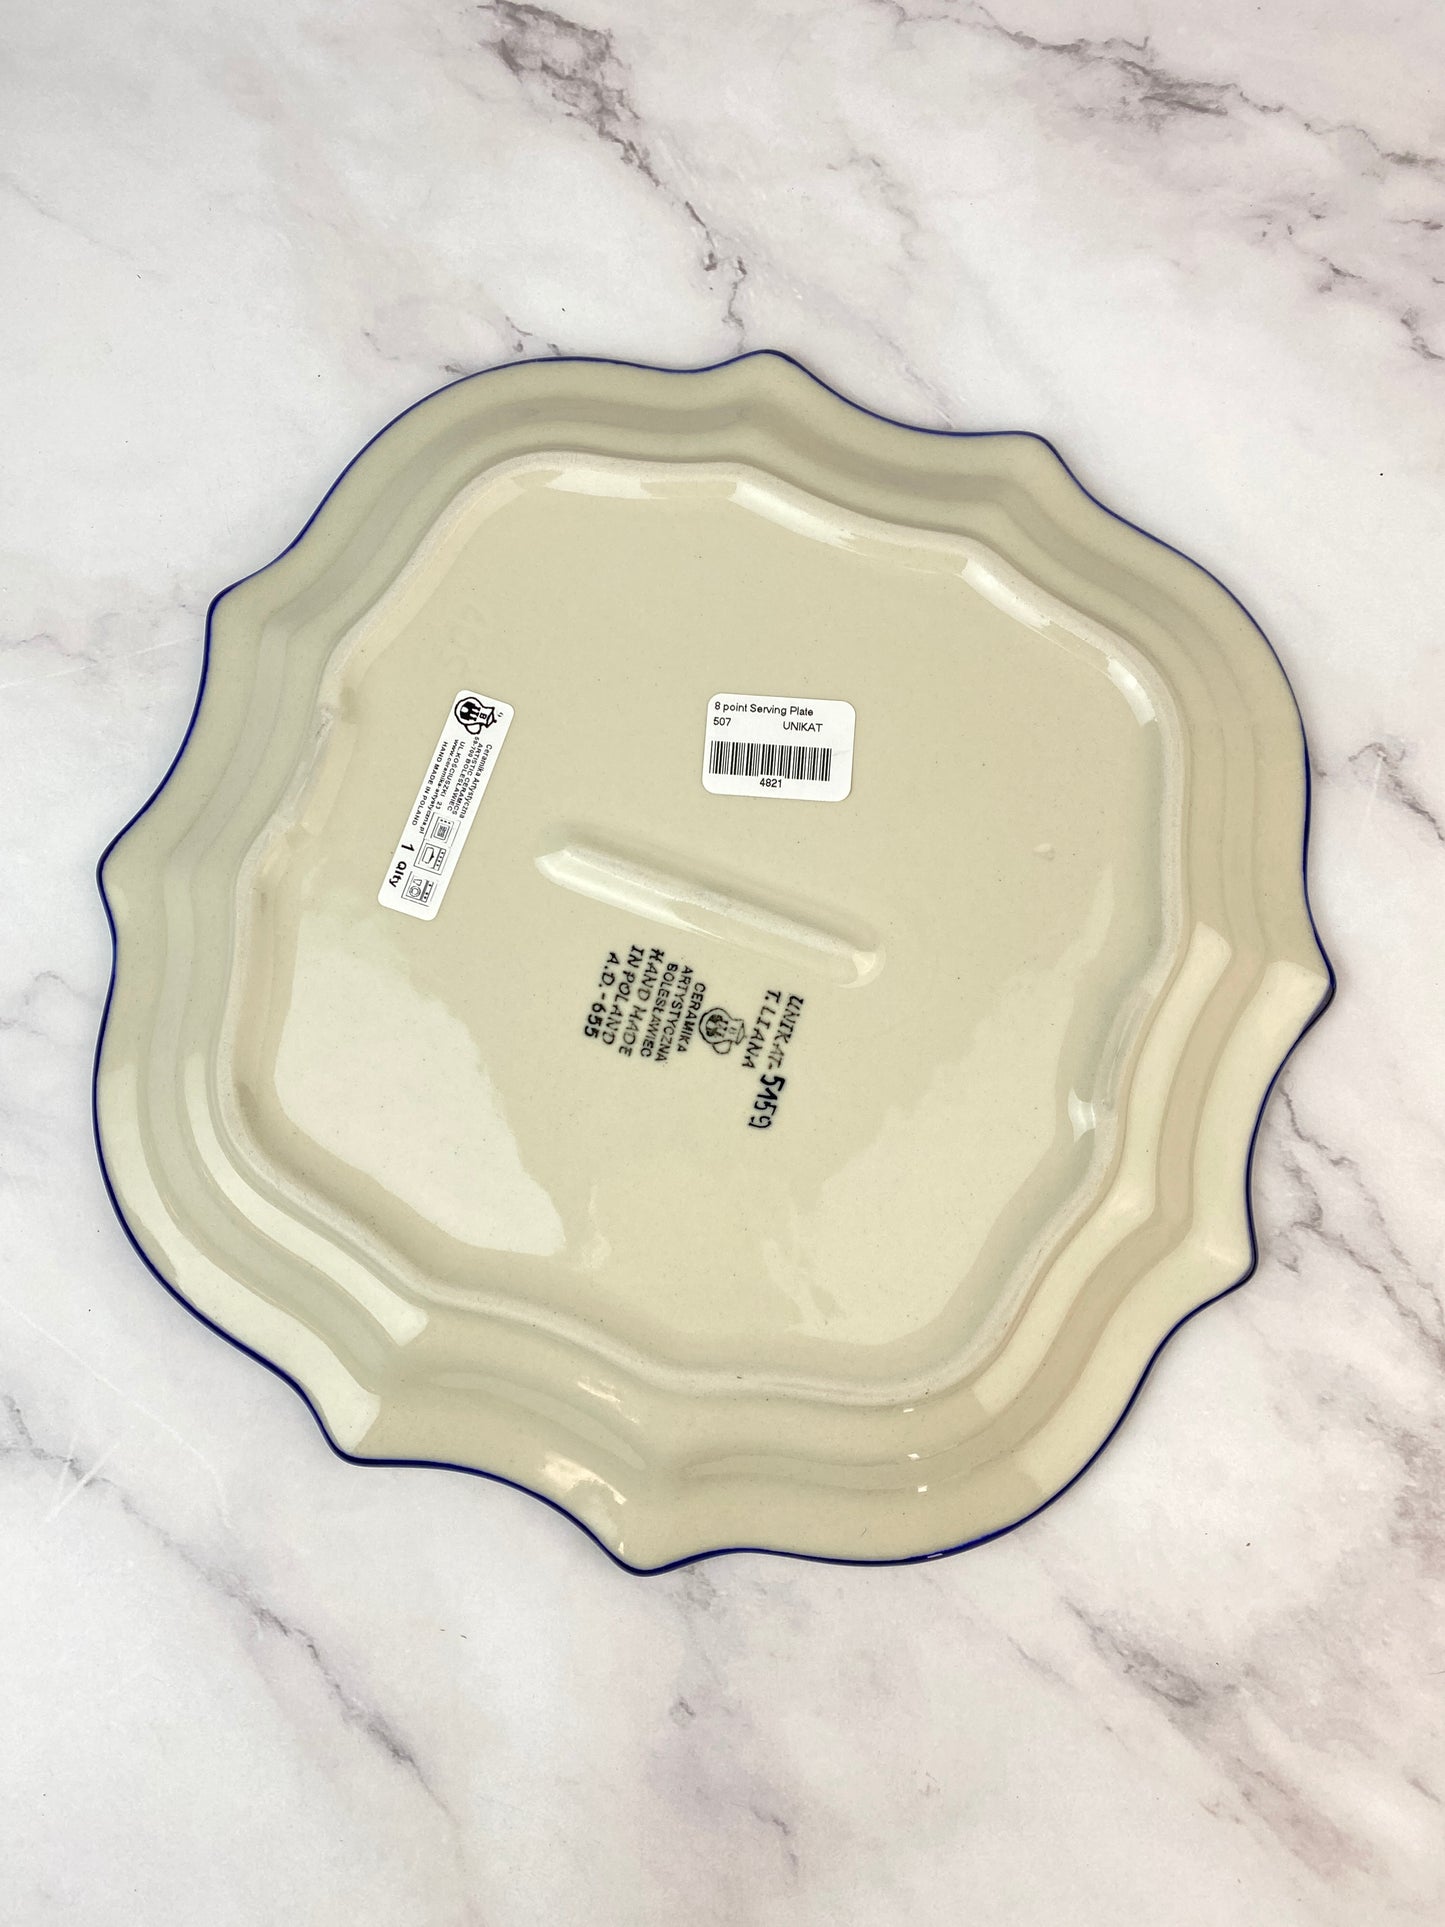 8 Pointed Unikat Platter/ Plate - Shape 507 - Pattern U5159